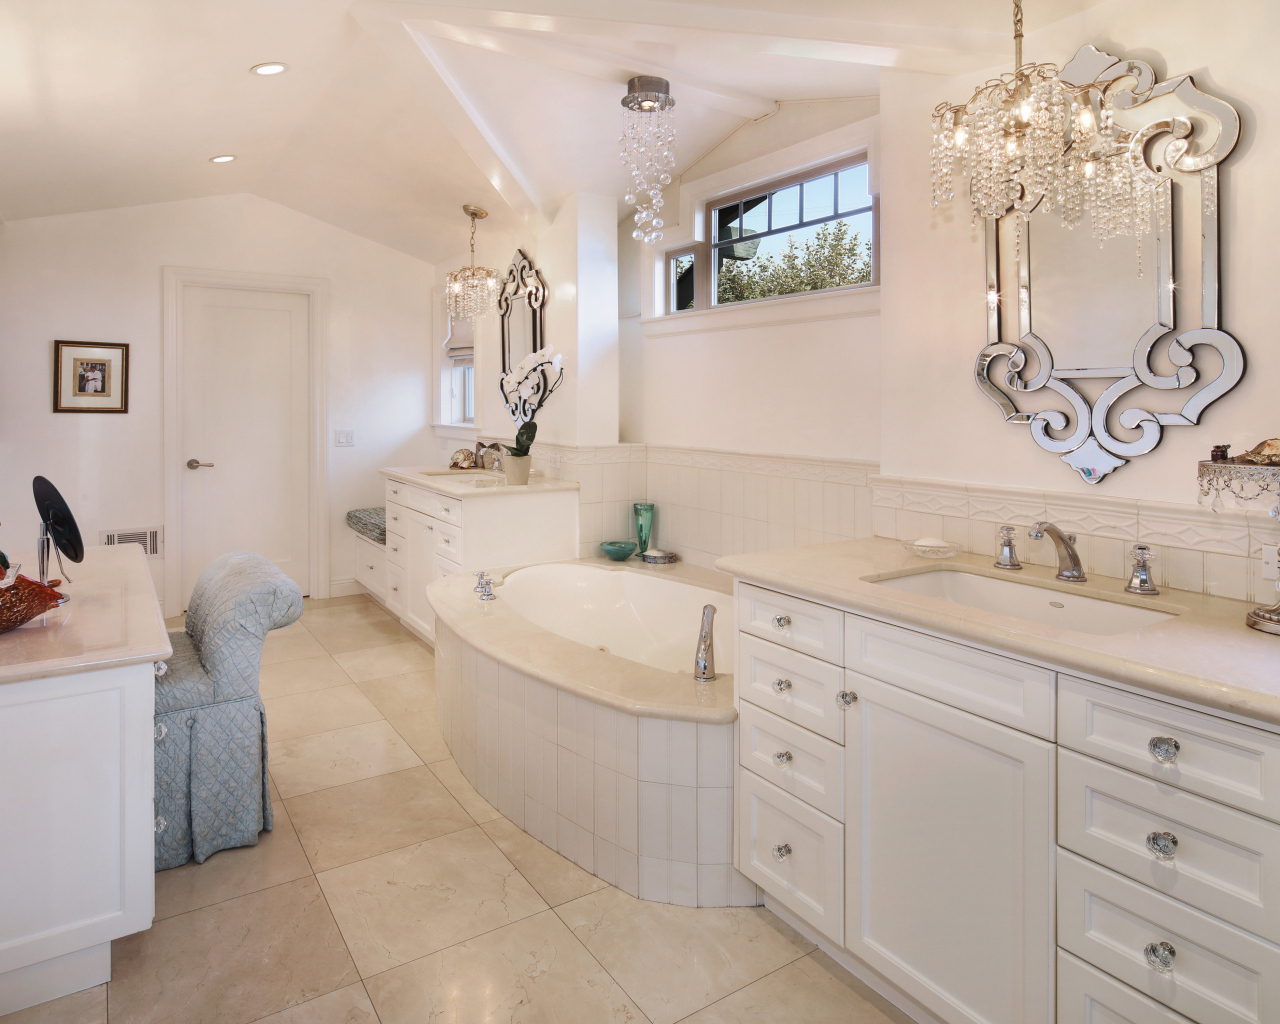 Ванная комната с белой мебелью и зеркалом